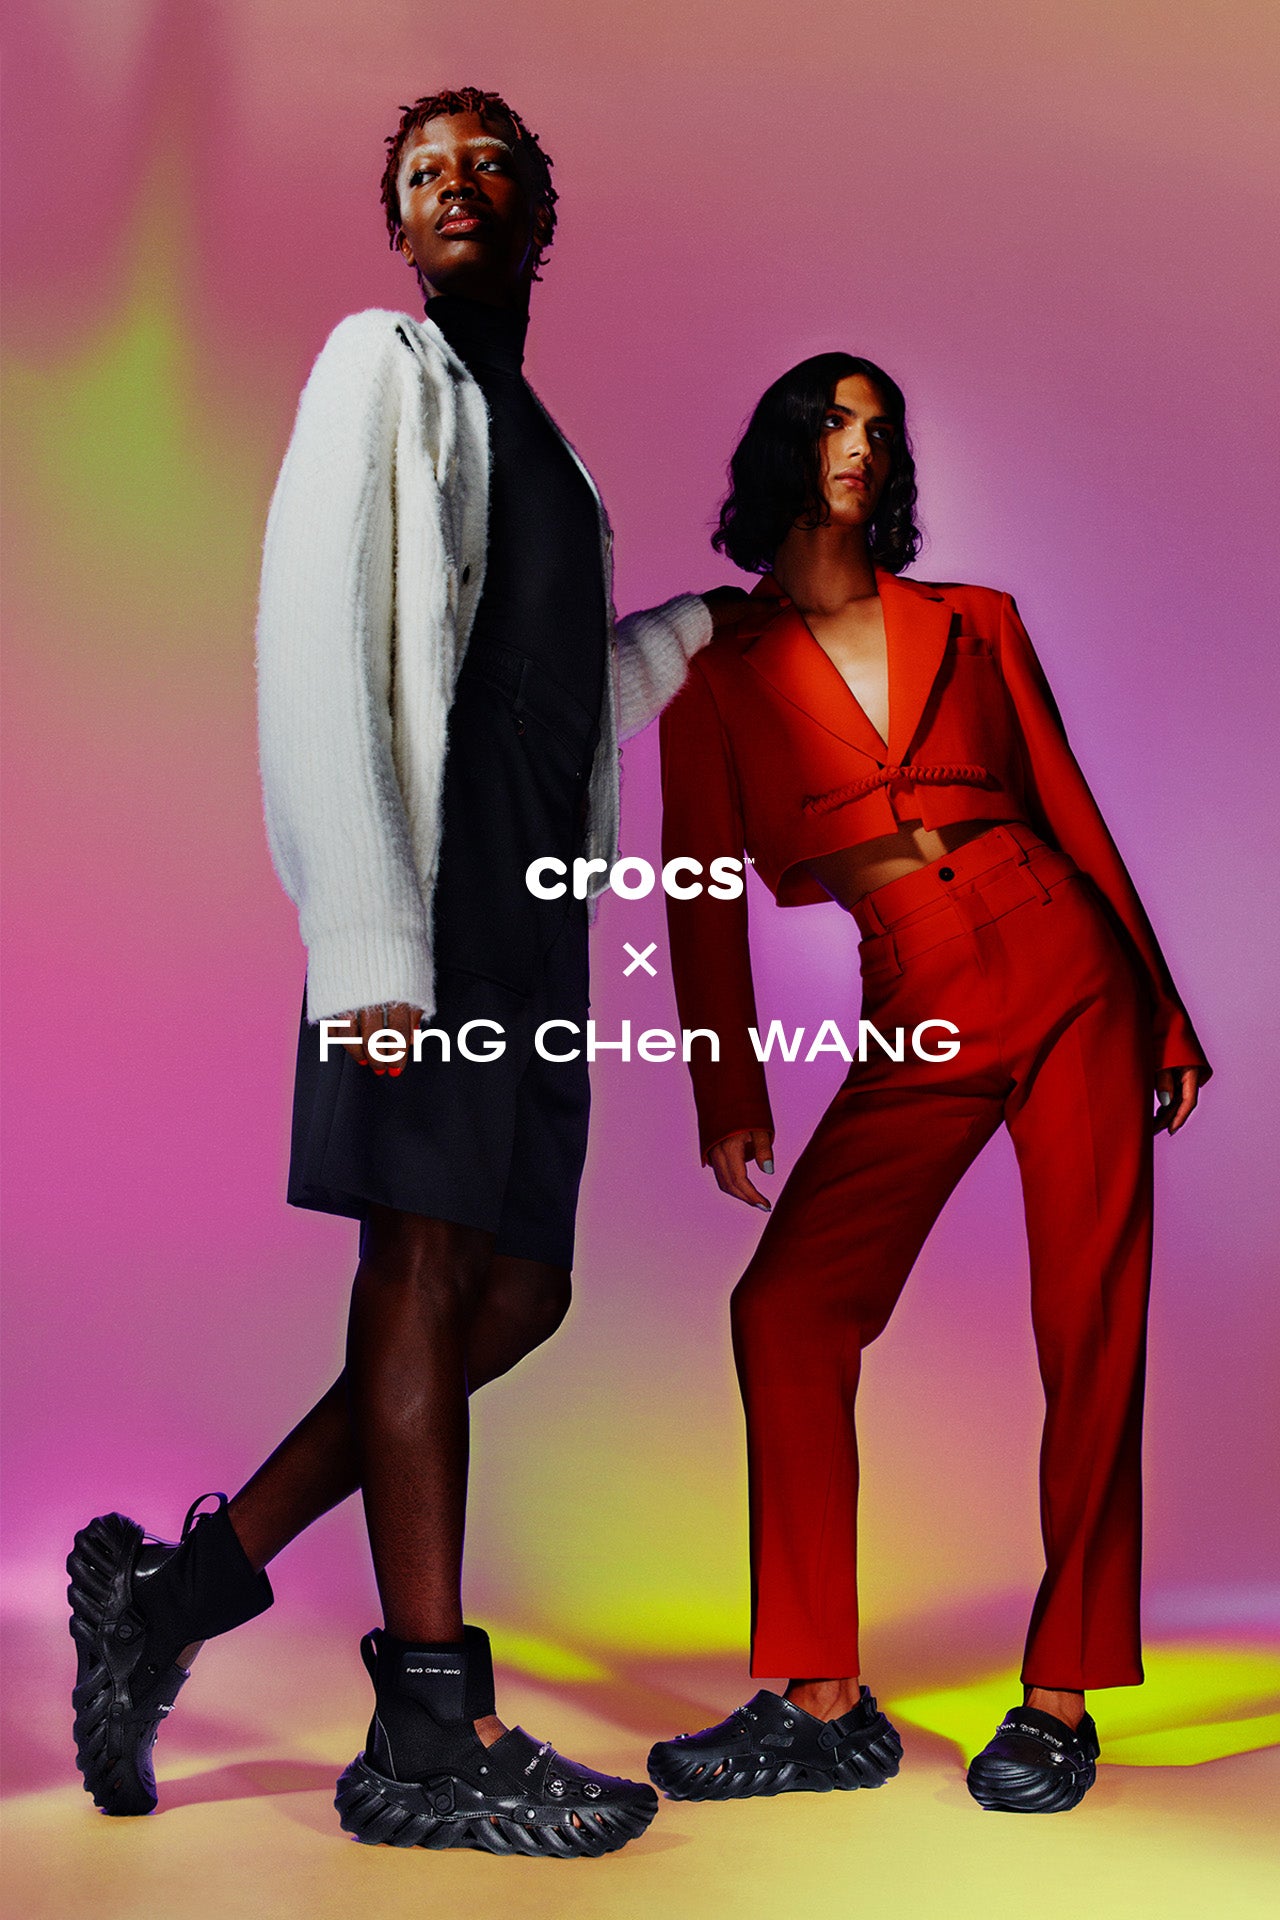 Crocs – Feng Chen Wang